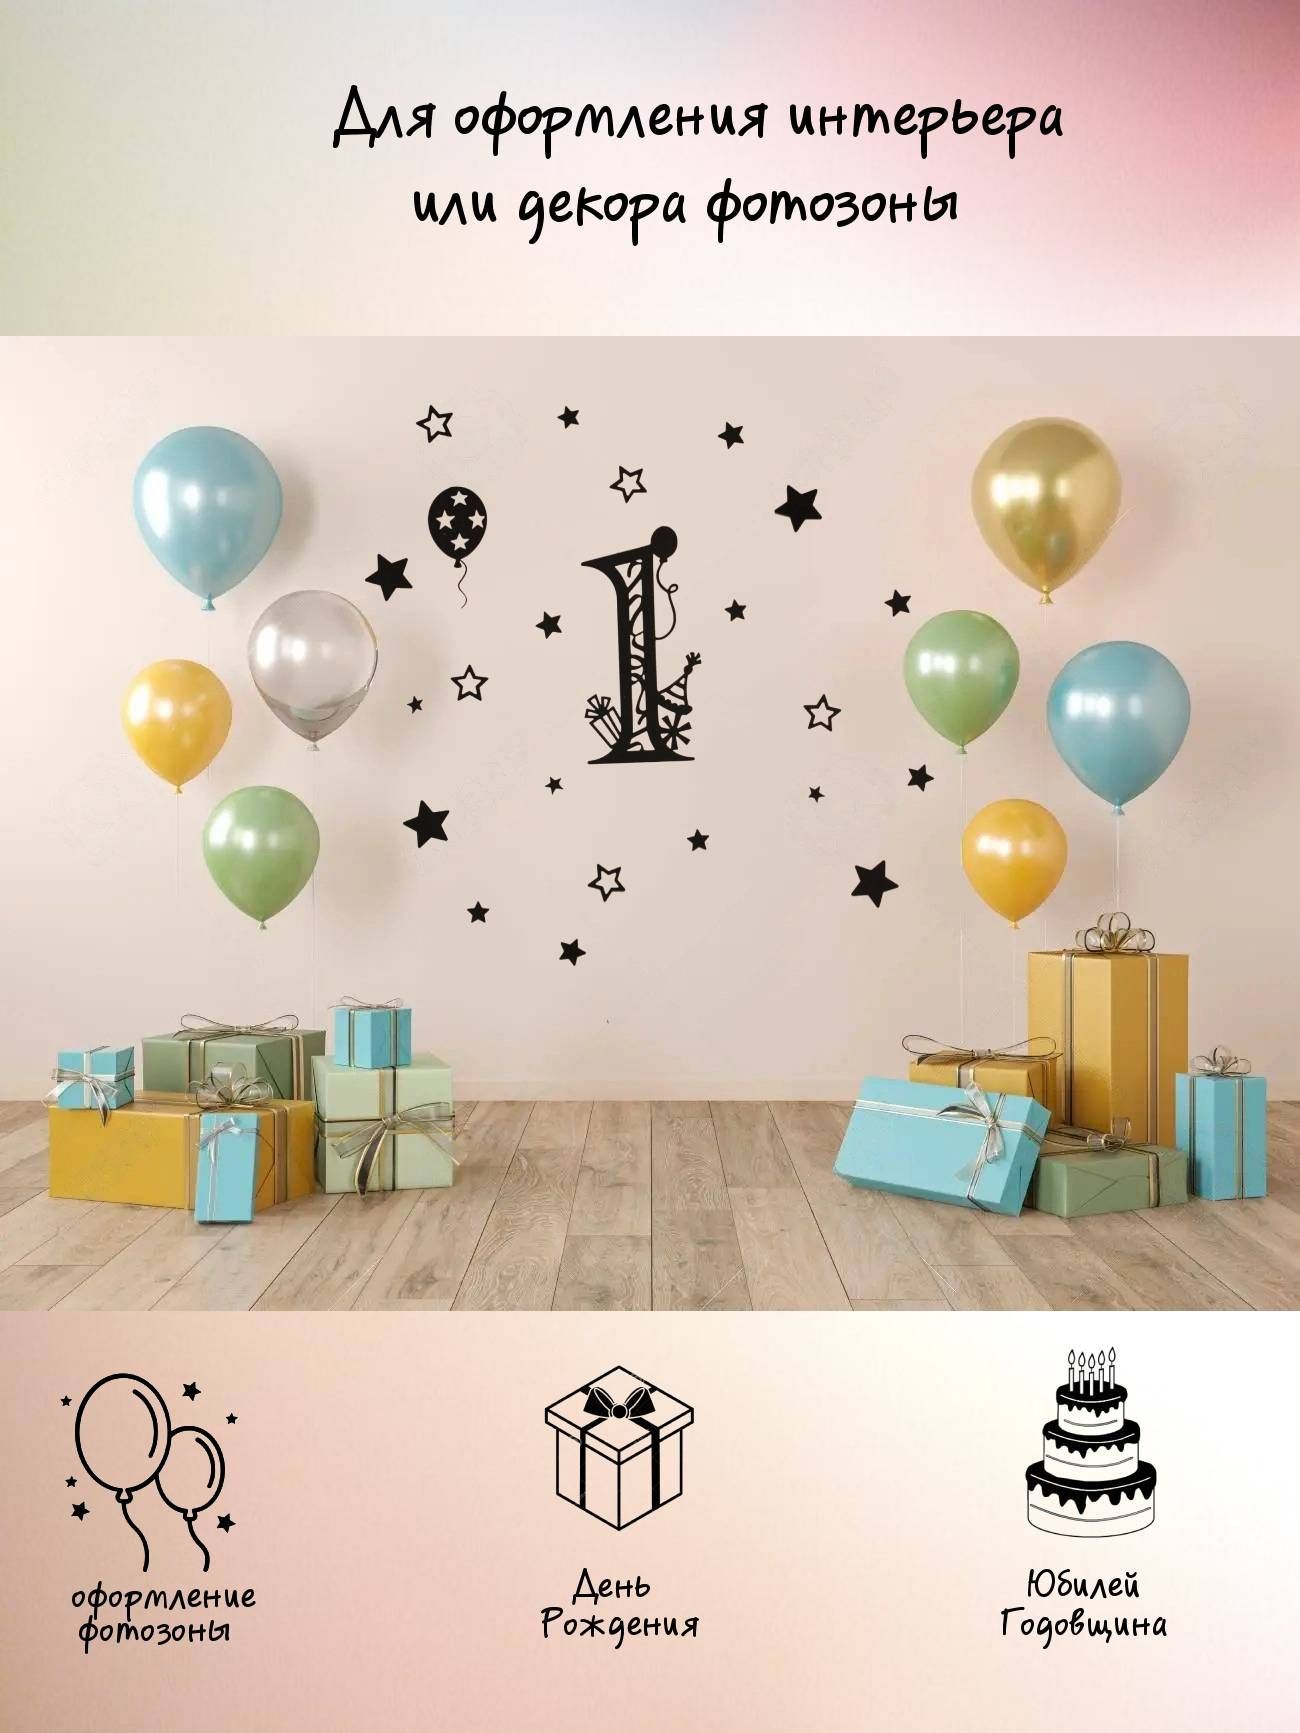 Подарки ко дню рождения в октябре - купить украшения в Киеве ≡ Pandora